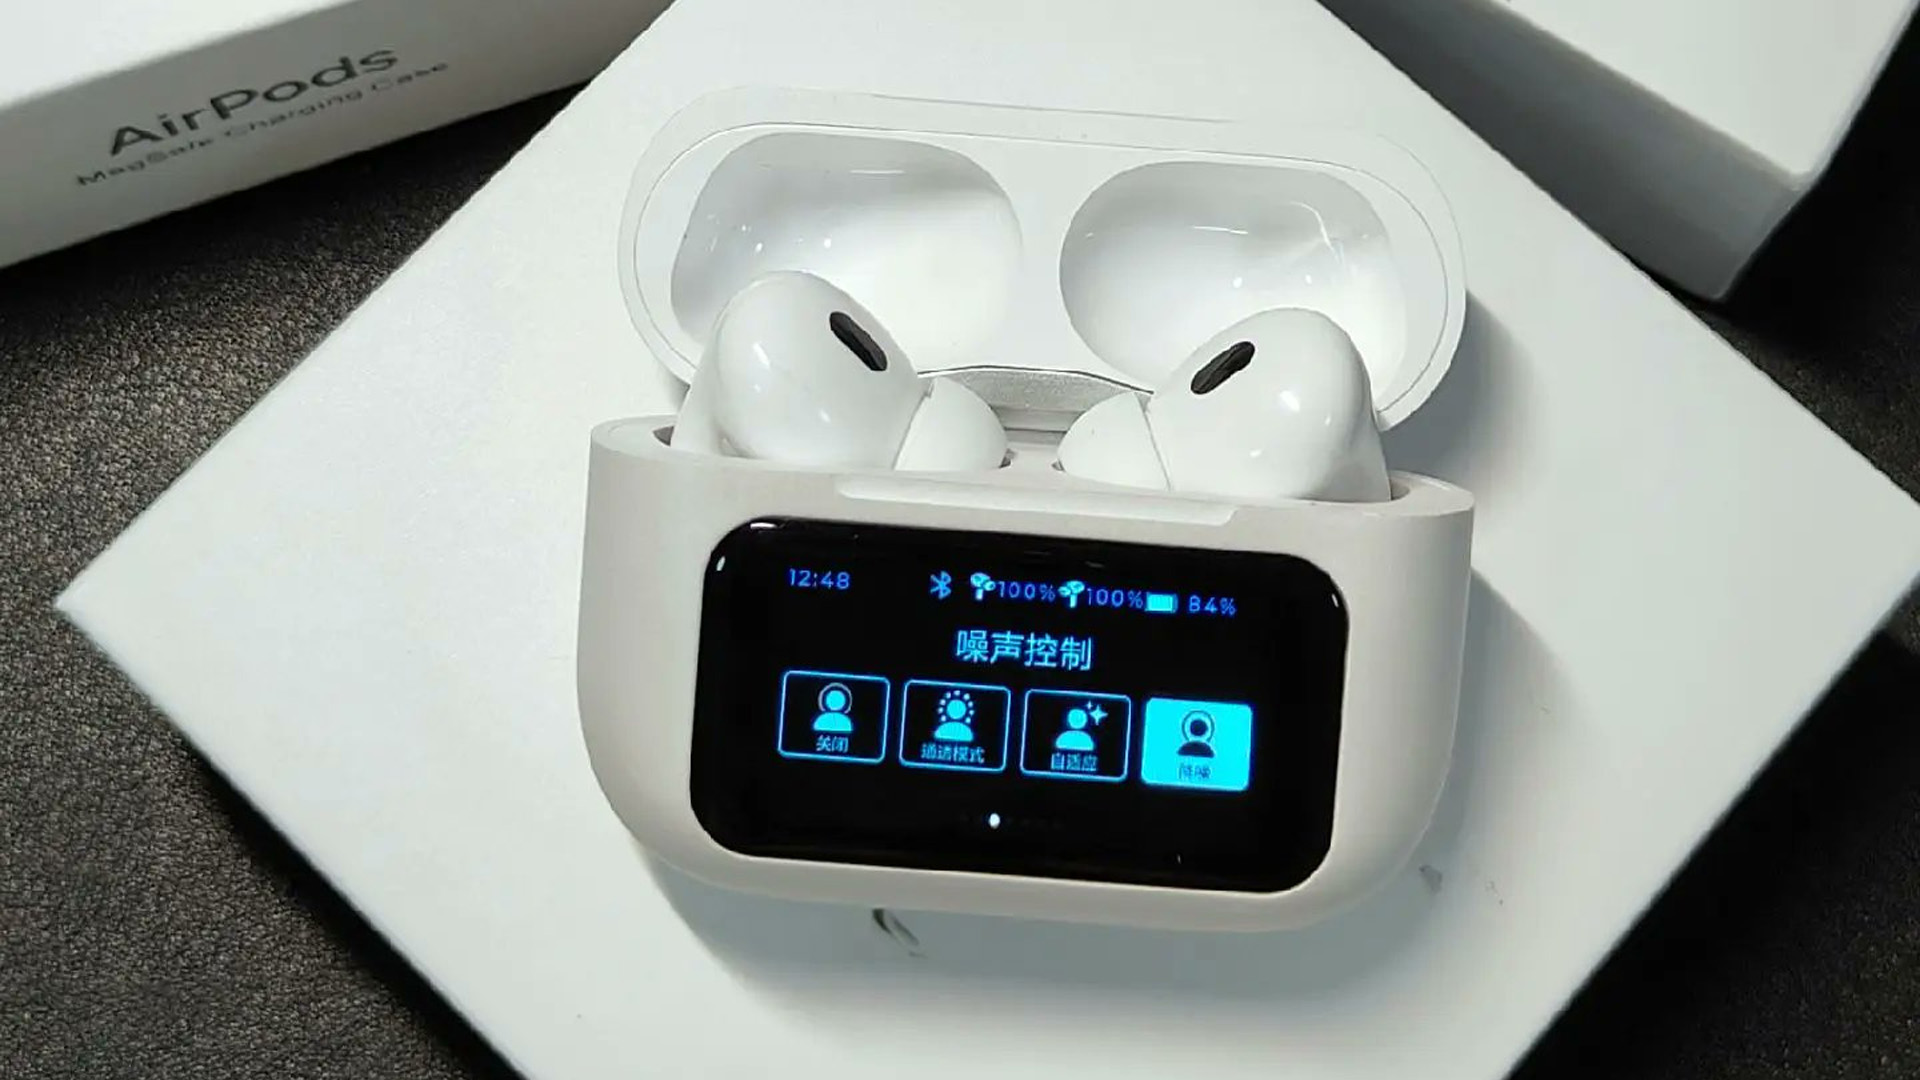 Apple non ci è riuscita, ci hanno pensato i cinesi: sono stati creati dei falsi AirPods con un display OLED